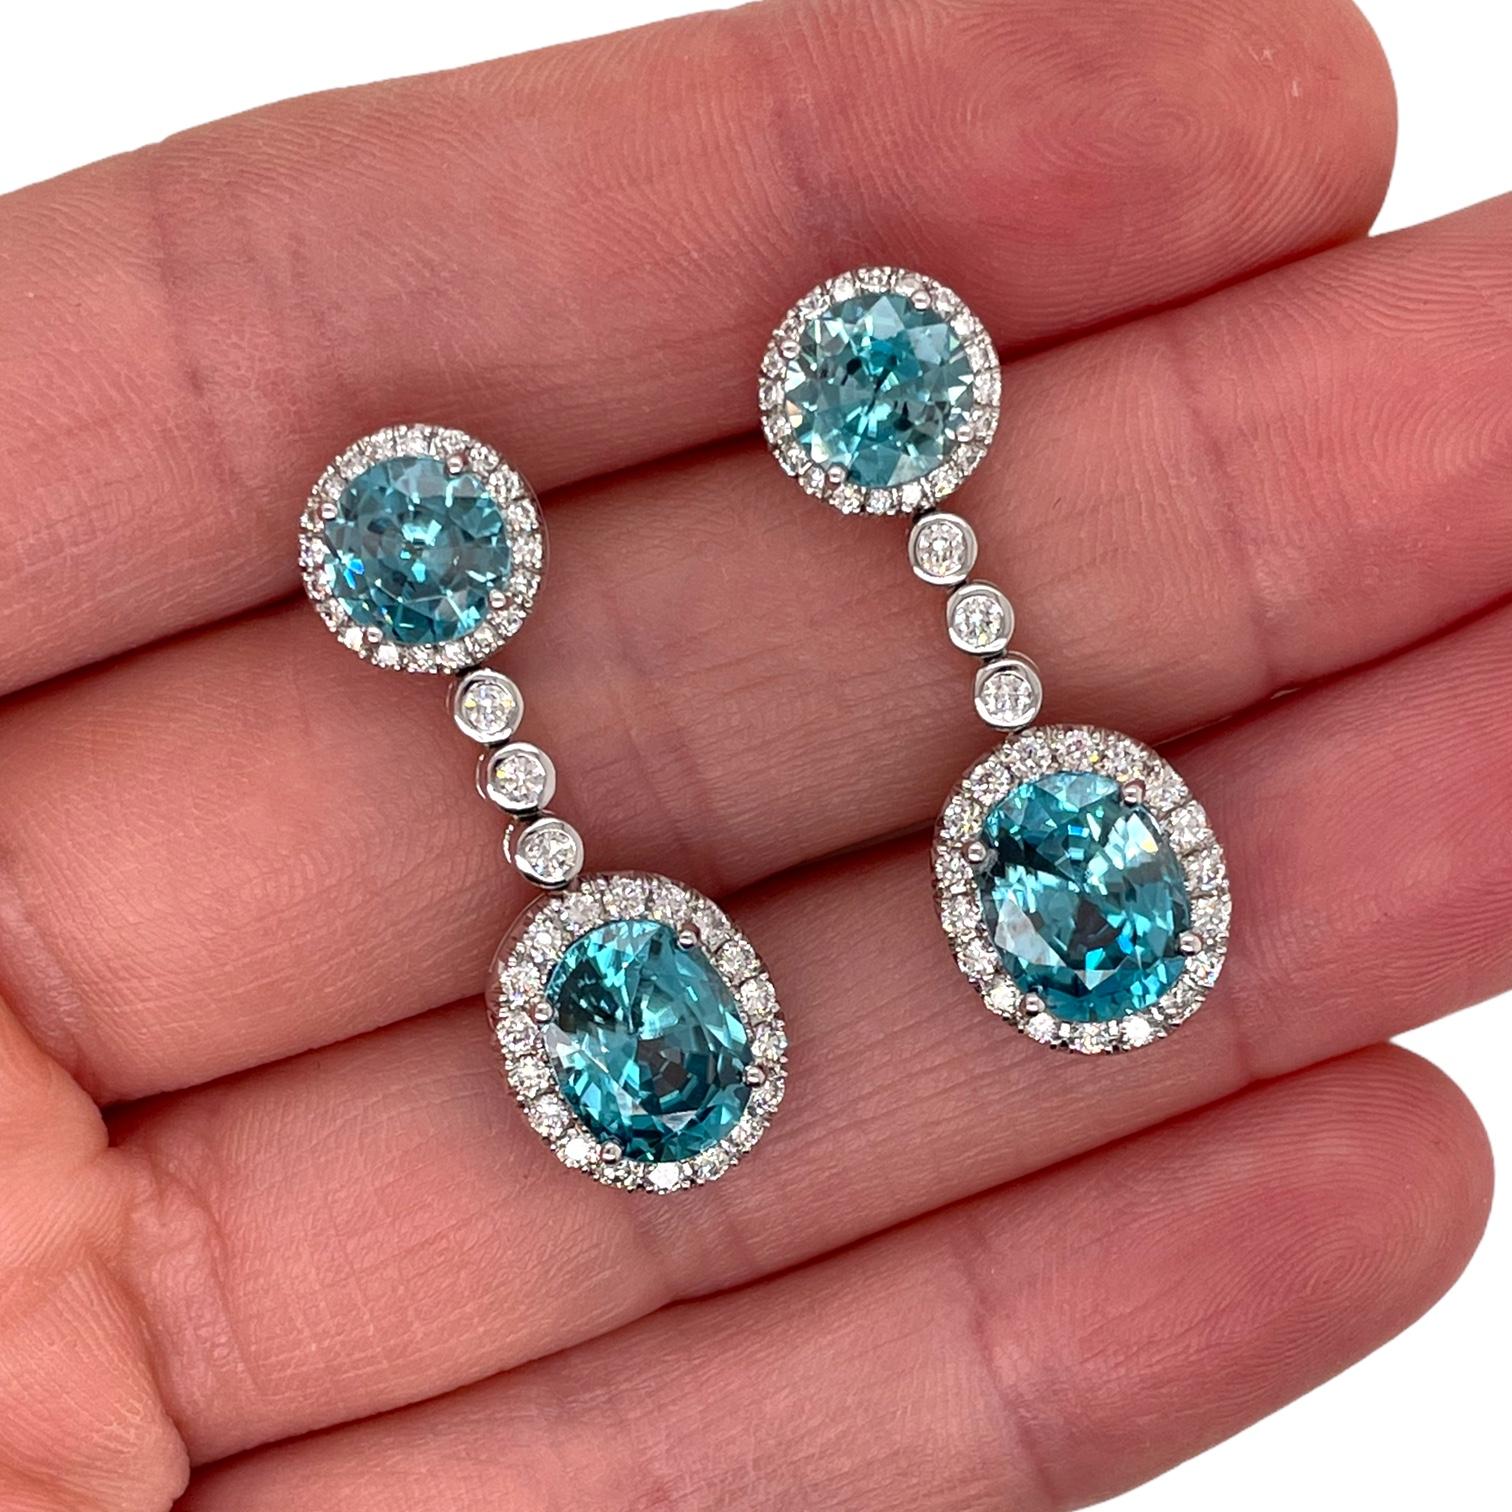 Striking blue zircon and diamond drop earrings in 18k white gold. Earrings contain 2 fine round brilliant & 2 oval cut blue zircons, 10.12tcw and 82 round brilliant diamonds, 0.88tcw. Diamonds are near colorless and SI1 in clarity. Earrings measure